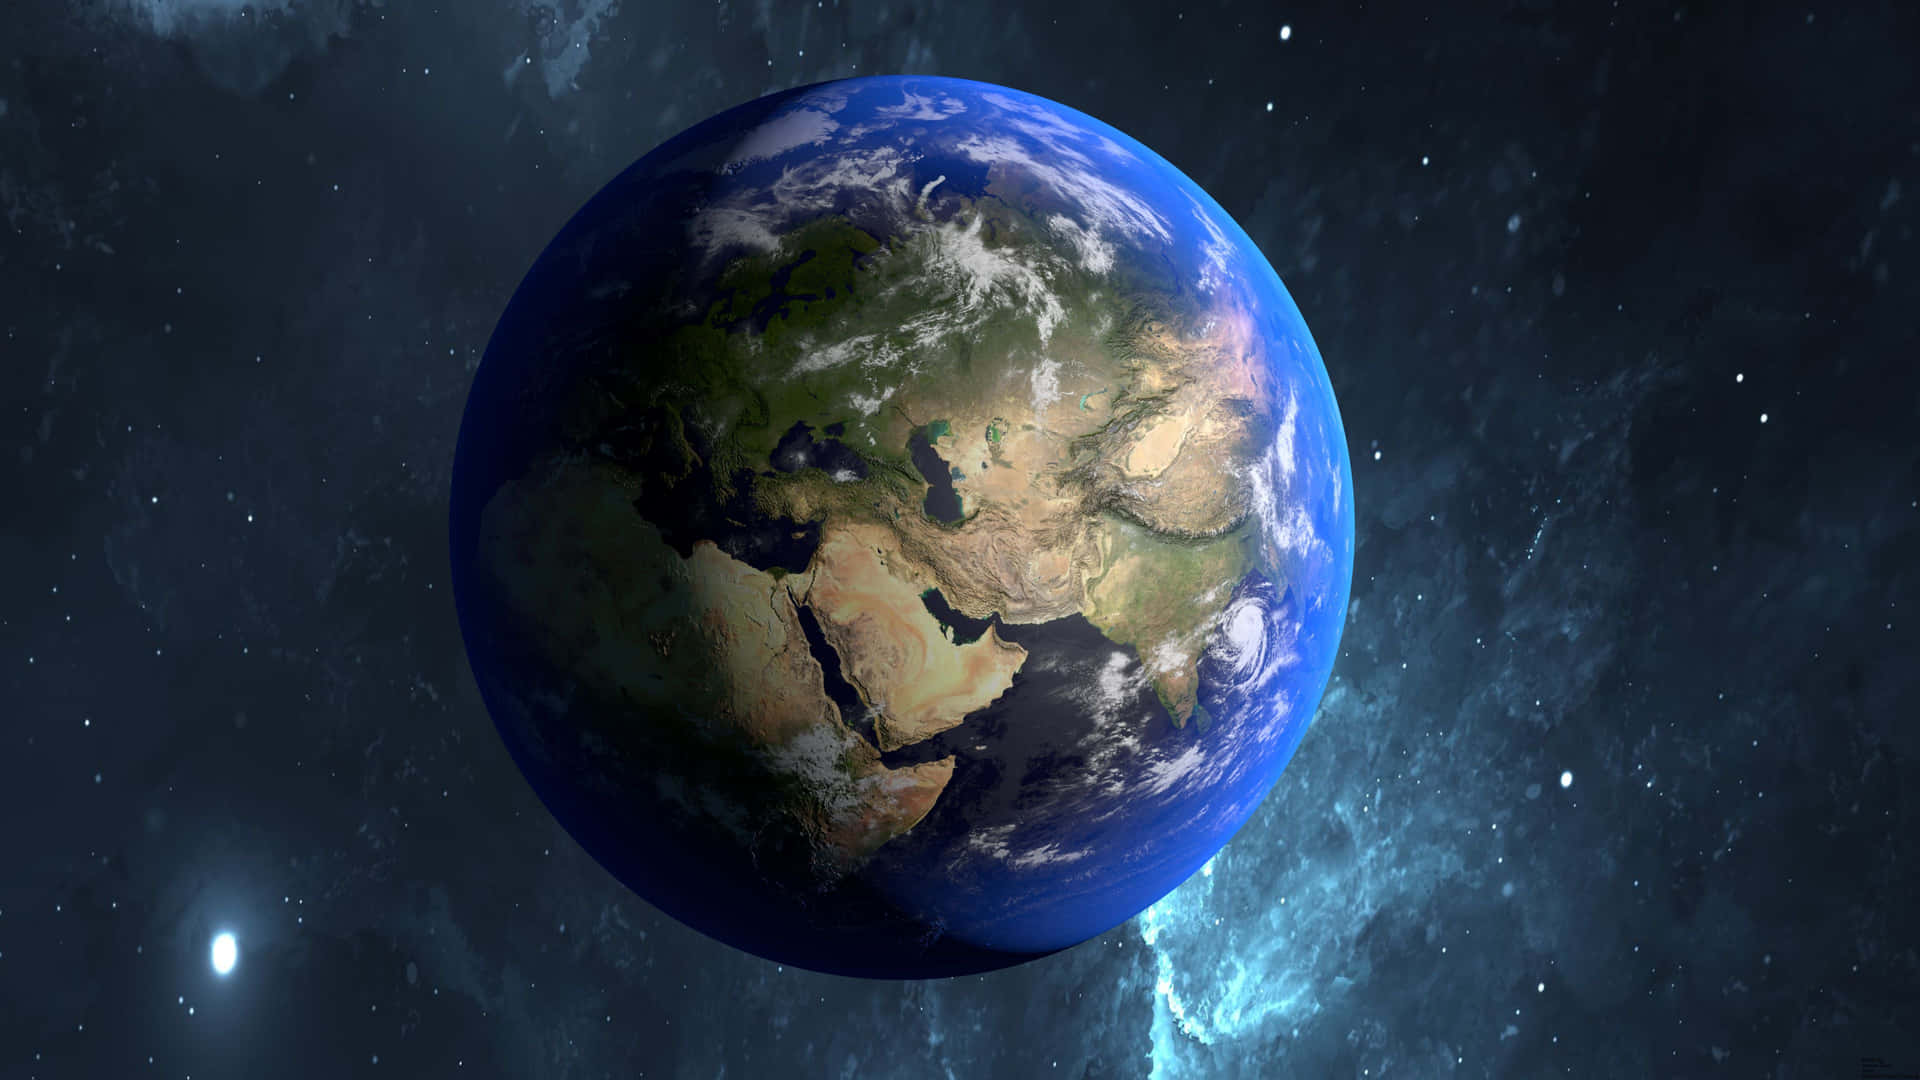 Ilustracióndel Planeta Tierra Fondo de pantalla